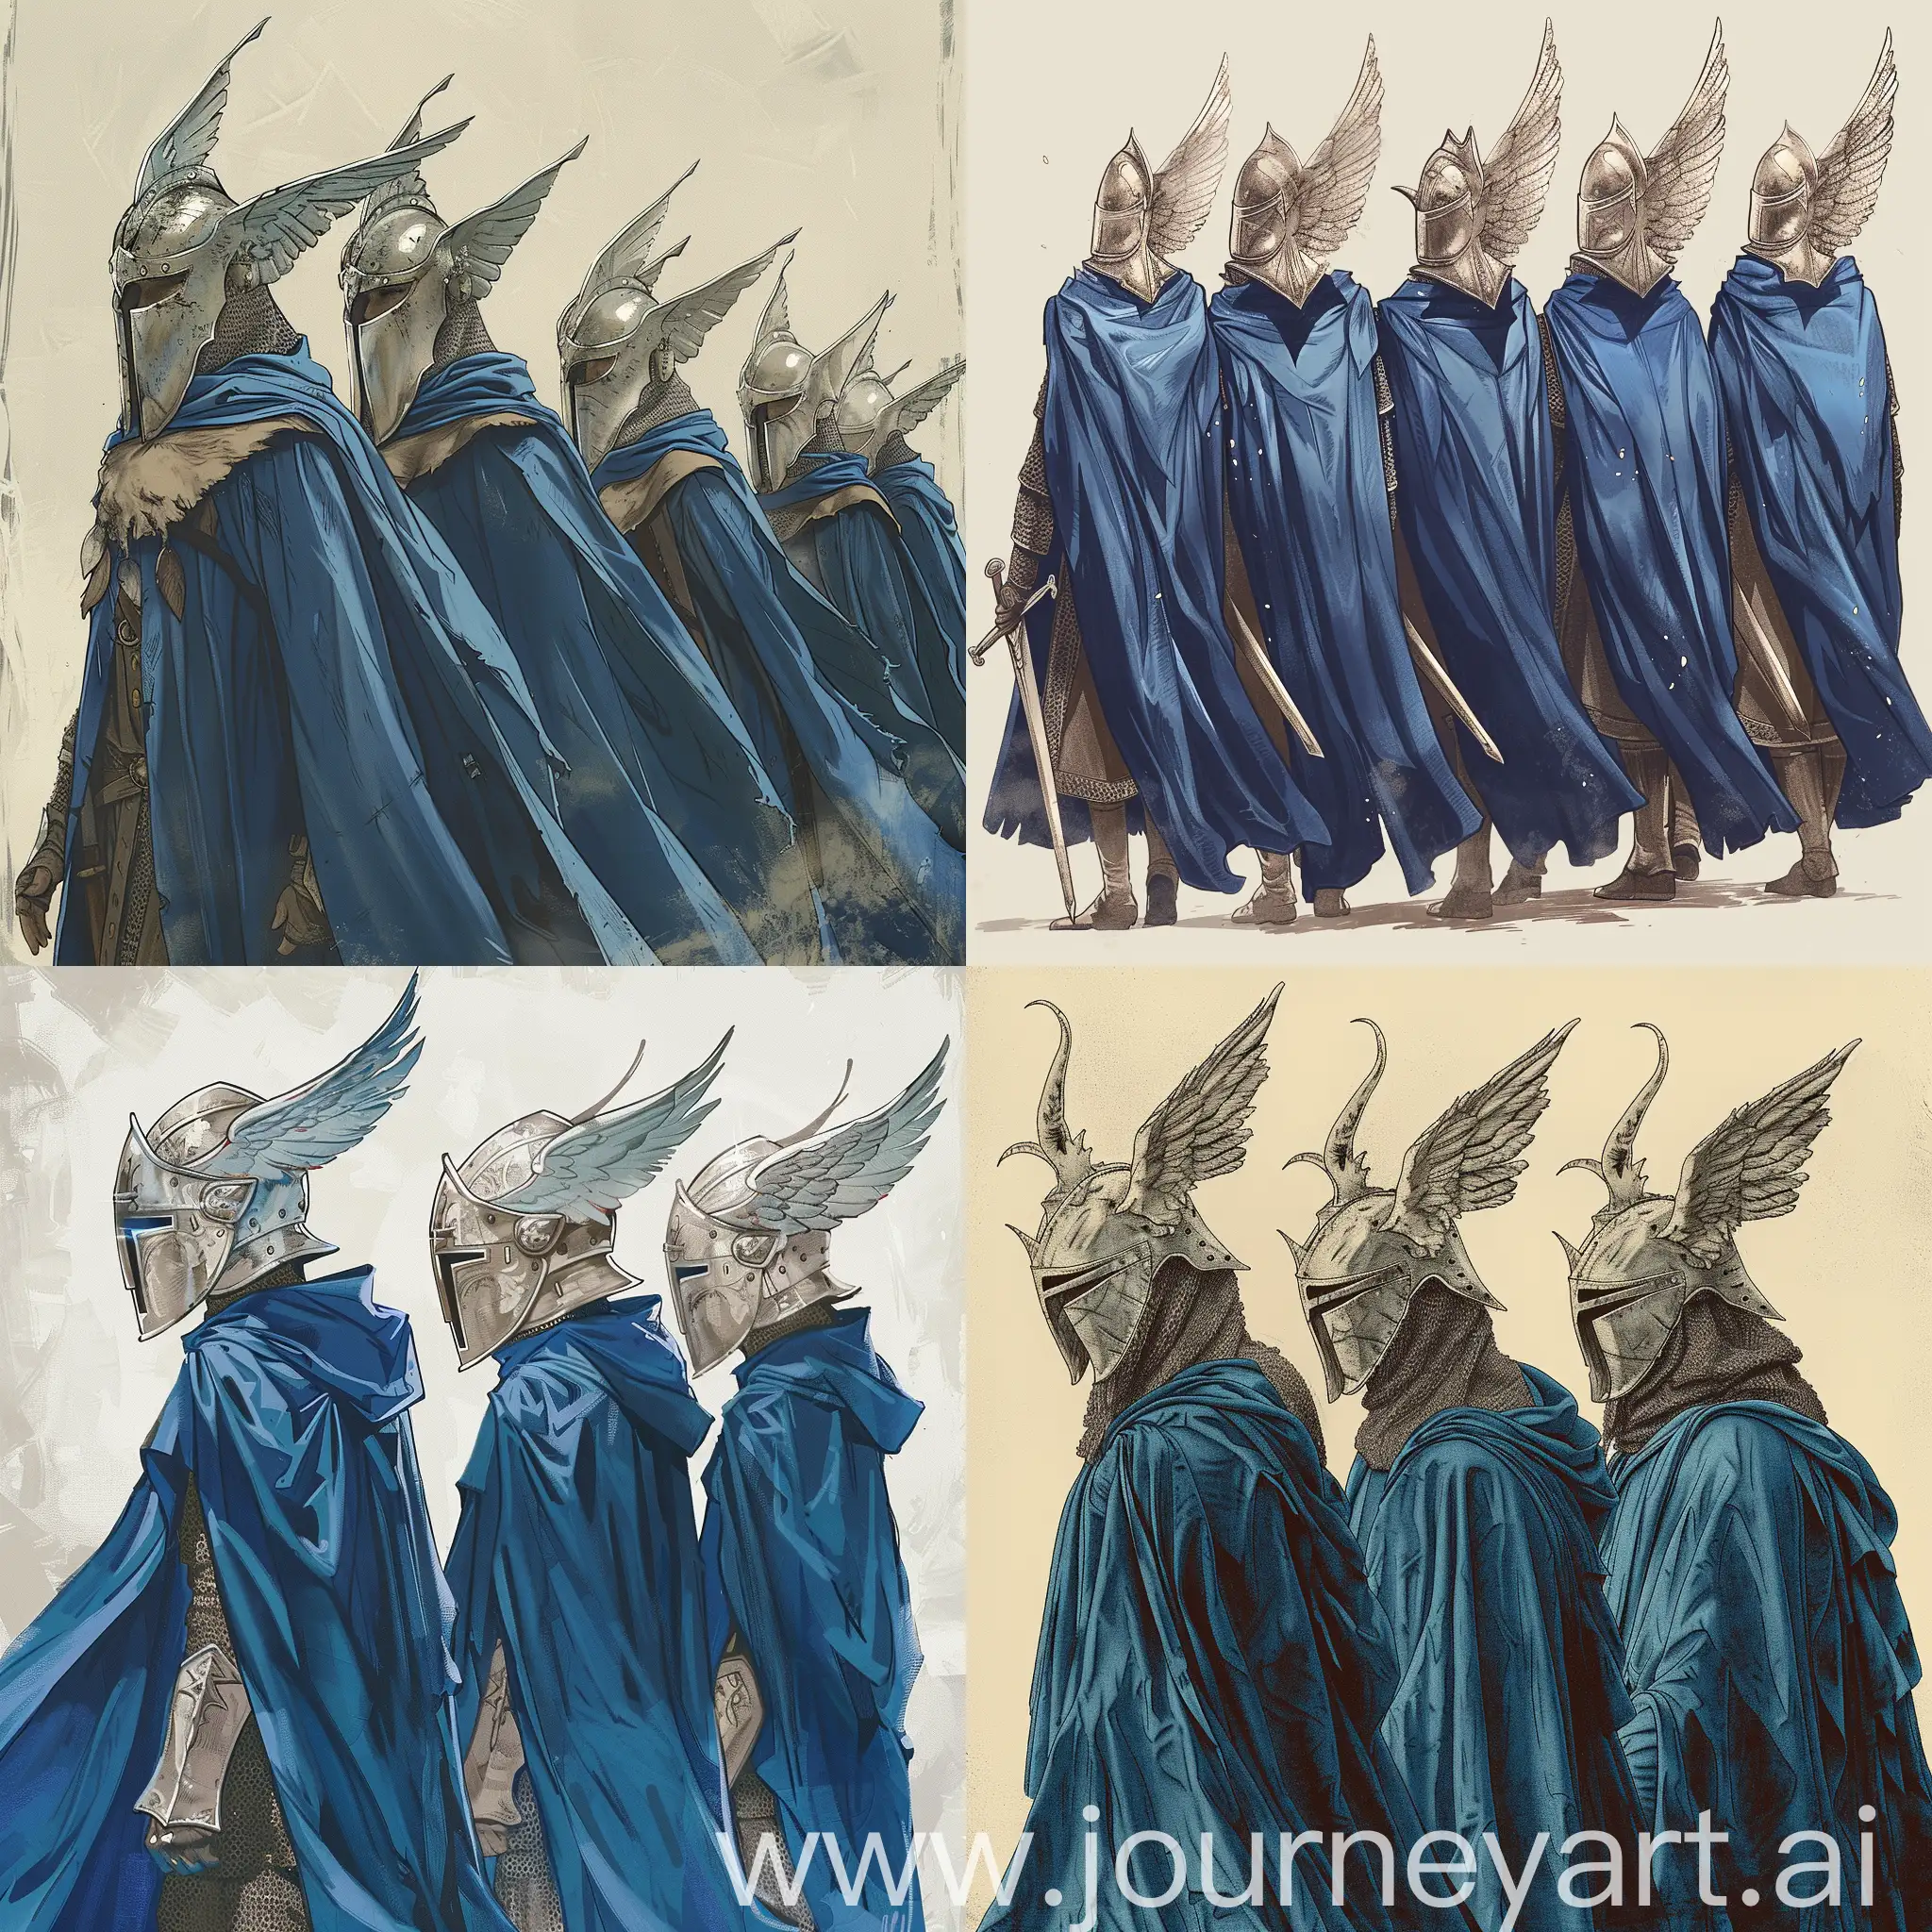 Нарисуй арт: гондорские рыцари с крылатыми шлемами, в синих плащах. Это в стиле изображений из игры Crusader kings 3.